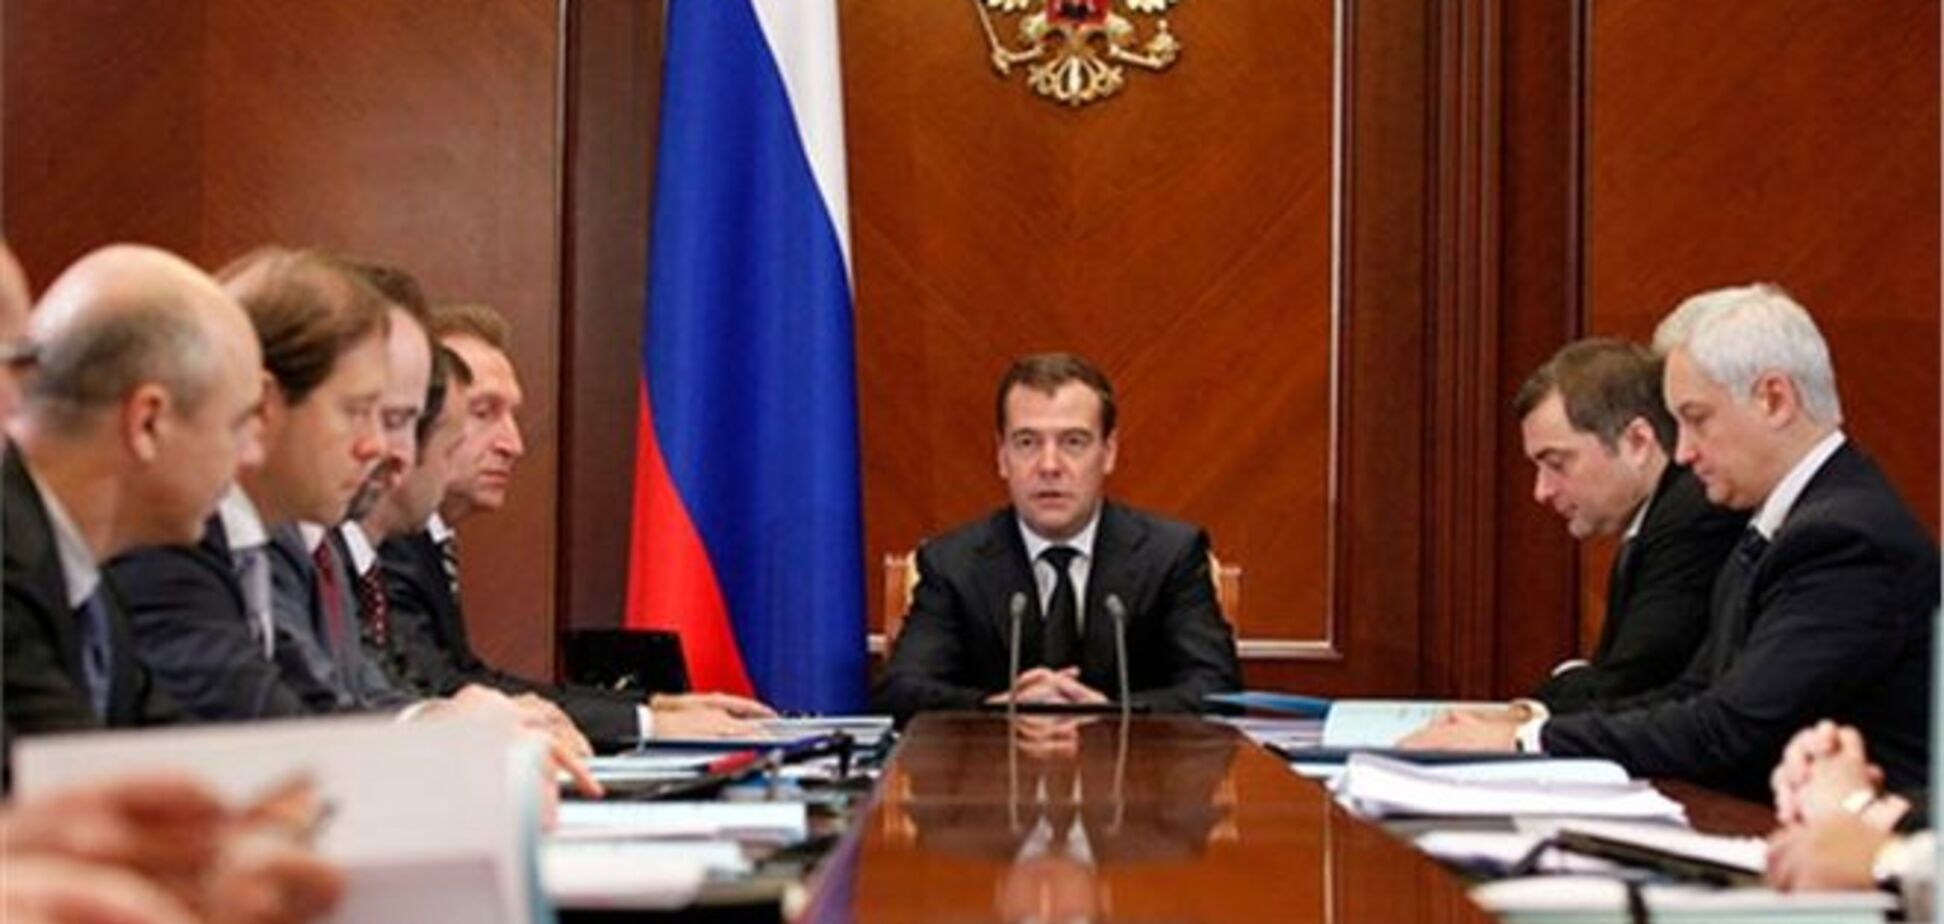 За отставку правительства России собрано около 2 млн подписей